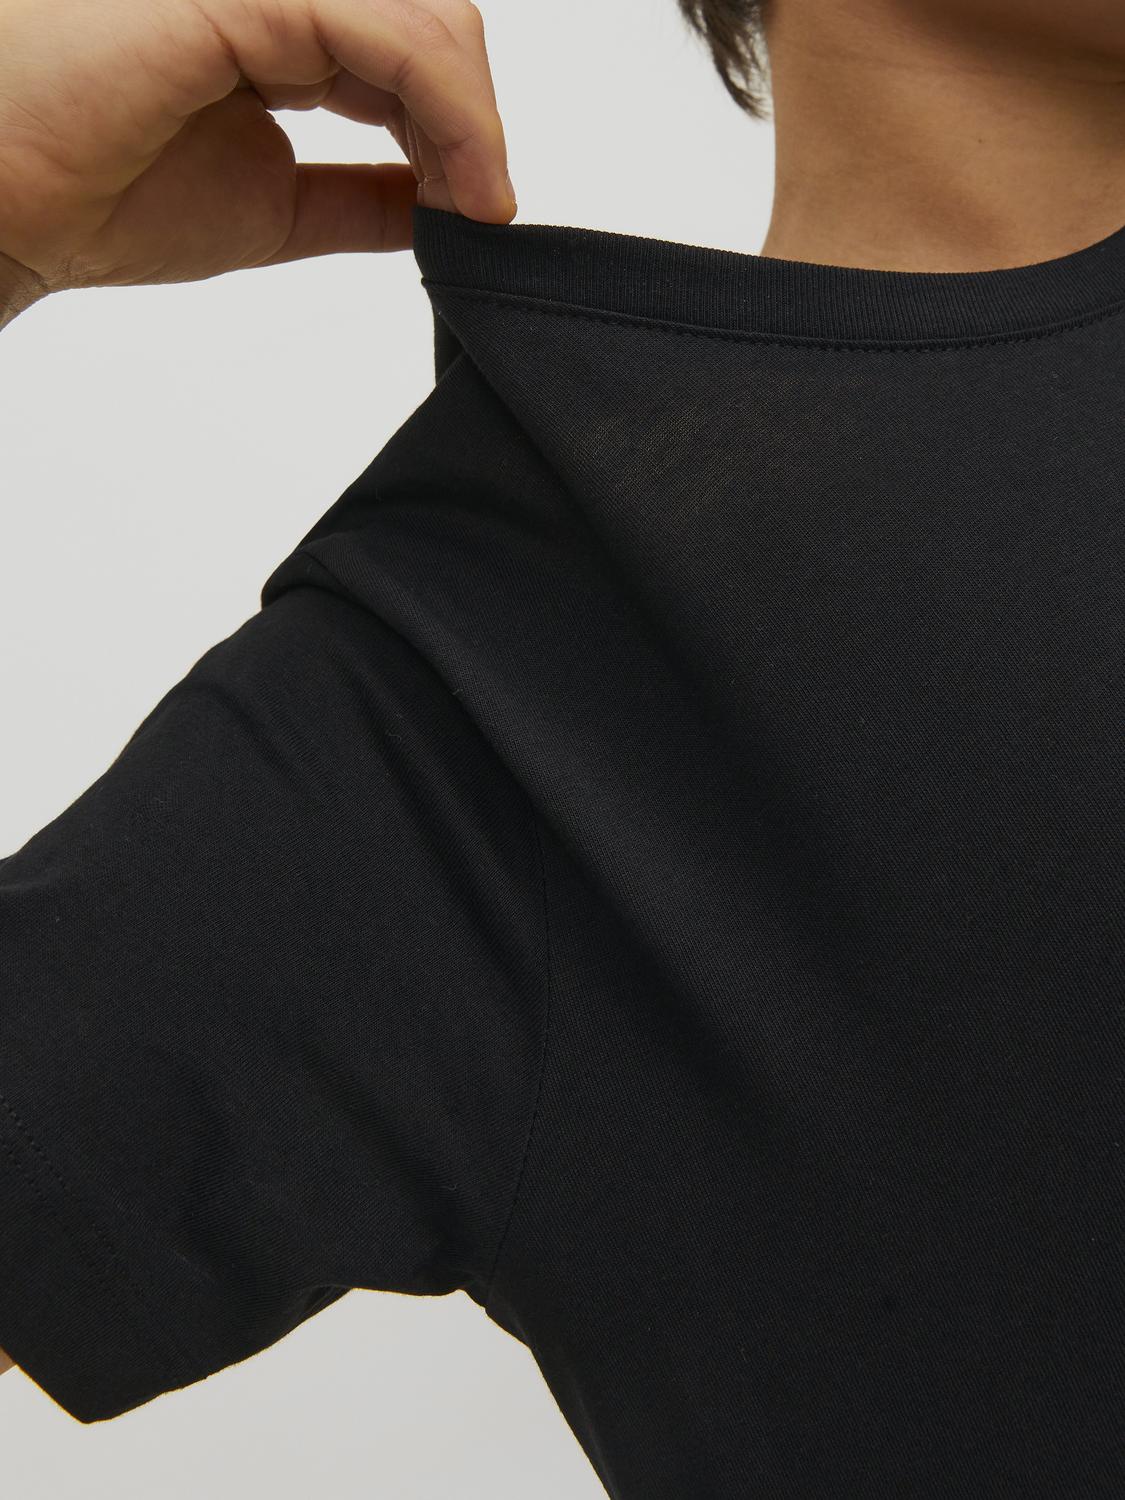 Jack & Jones Gładki T-shirt Mini -Black - 12257380